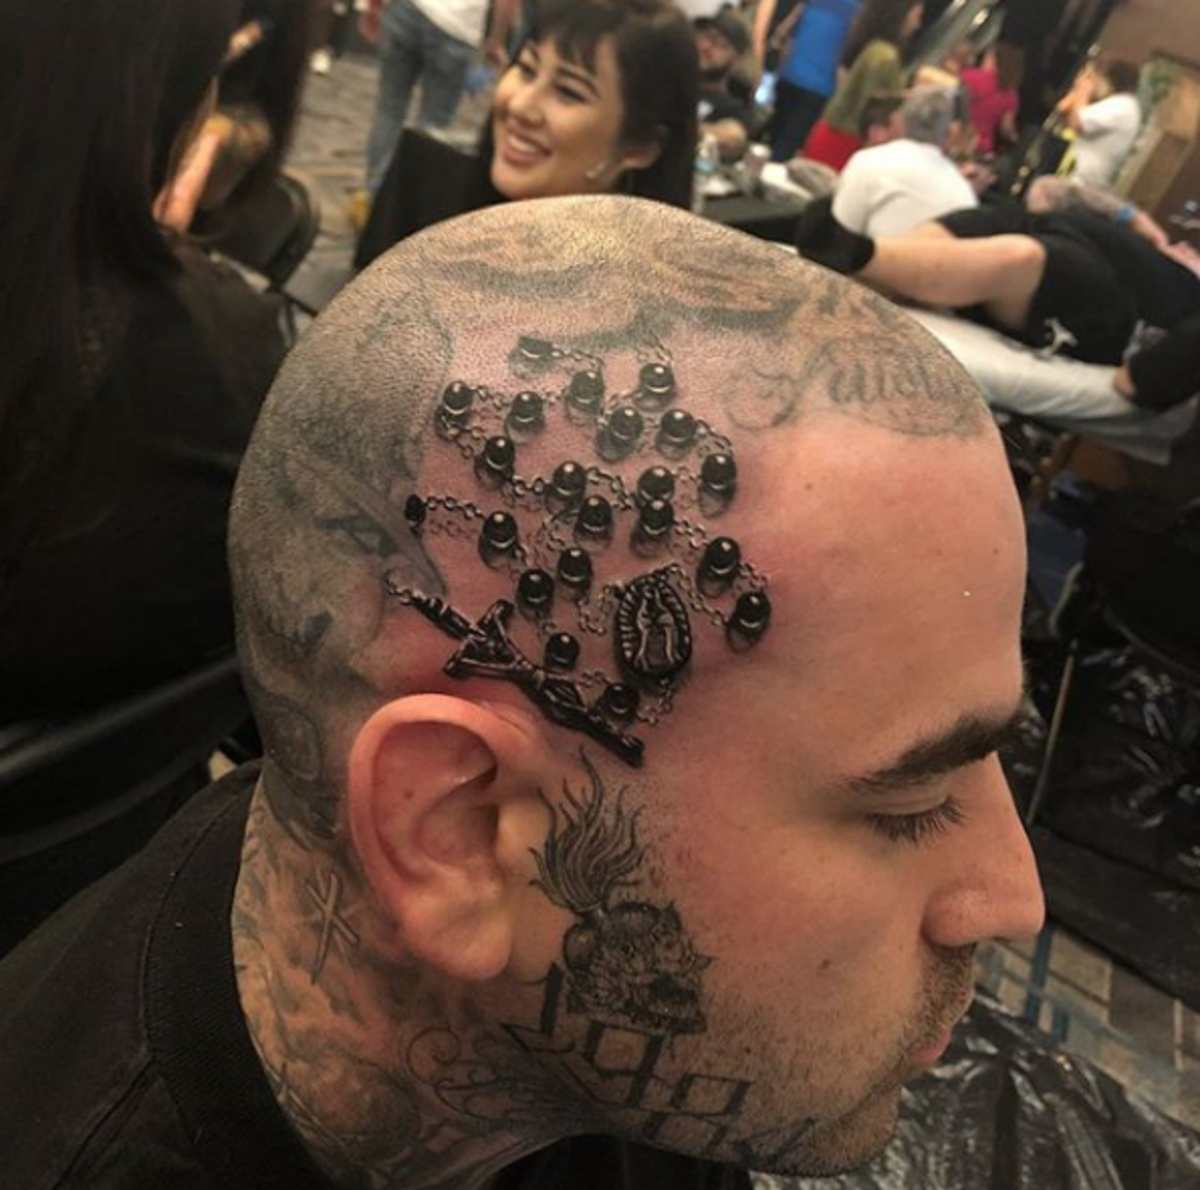 tetování, tetování, nápad na tetování, inspirace tetováním, design tetování, tetování na hlavě, inkoust, inkoust